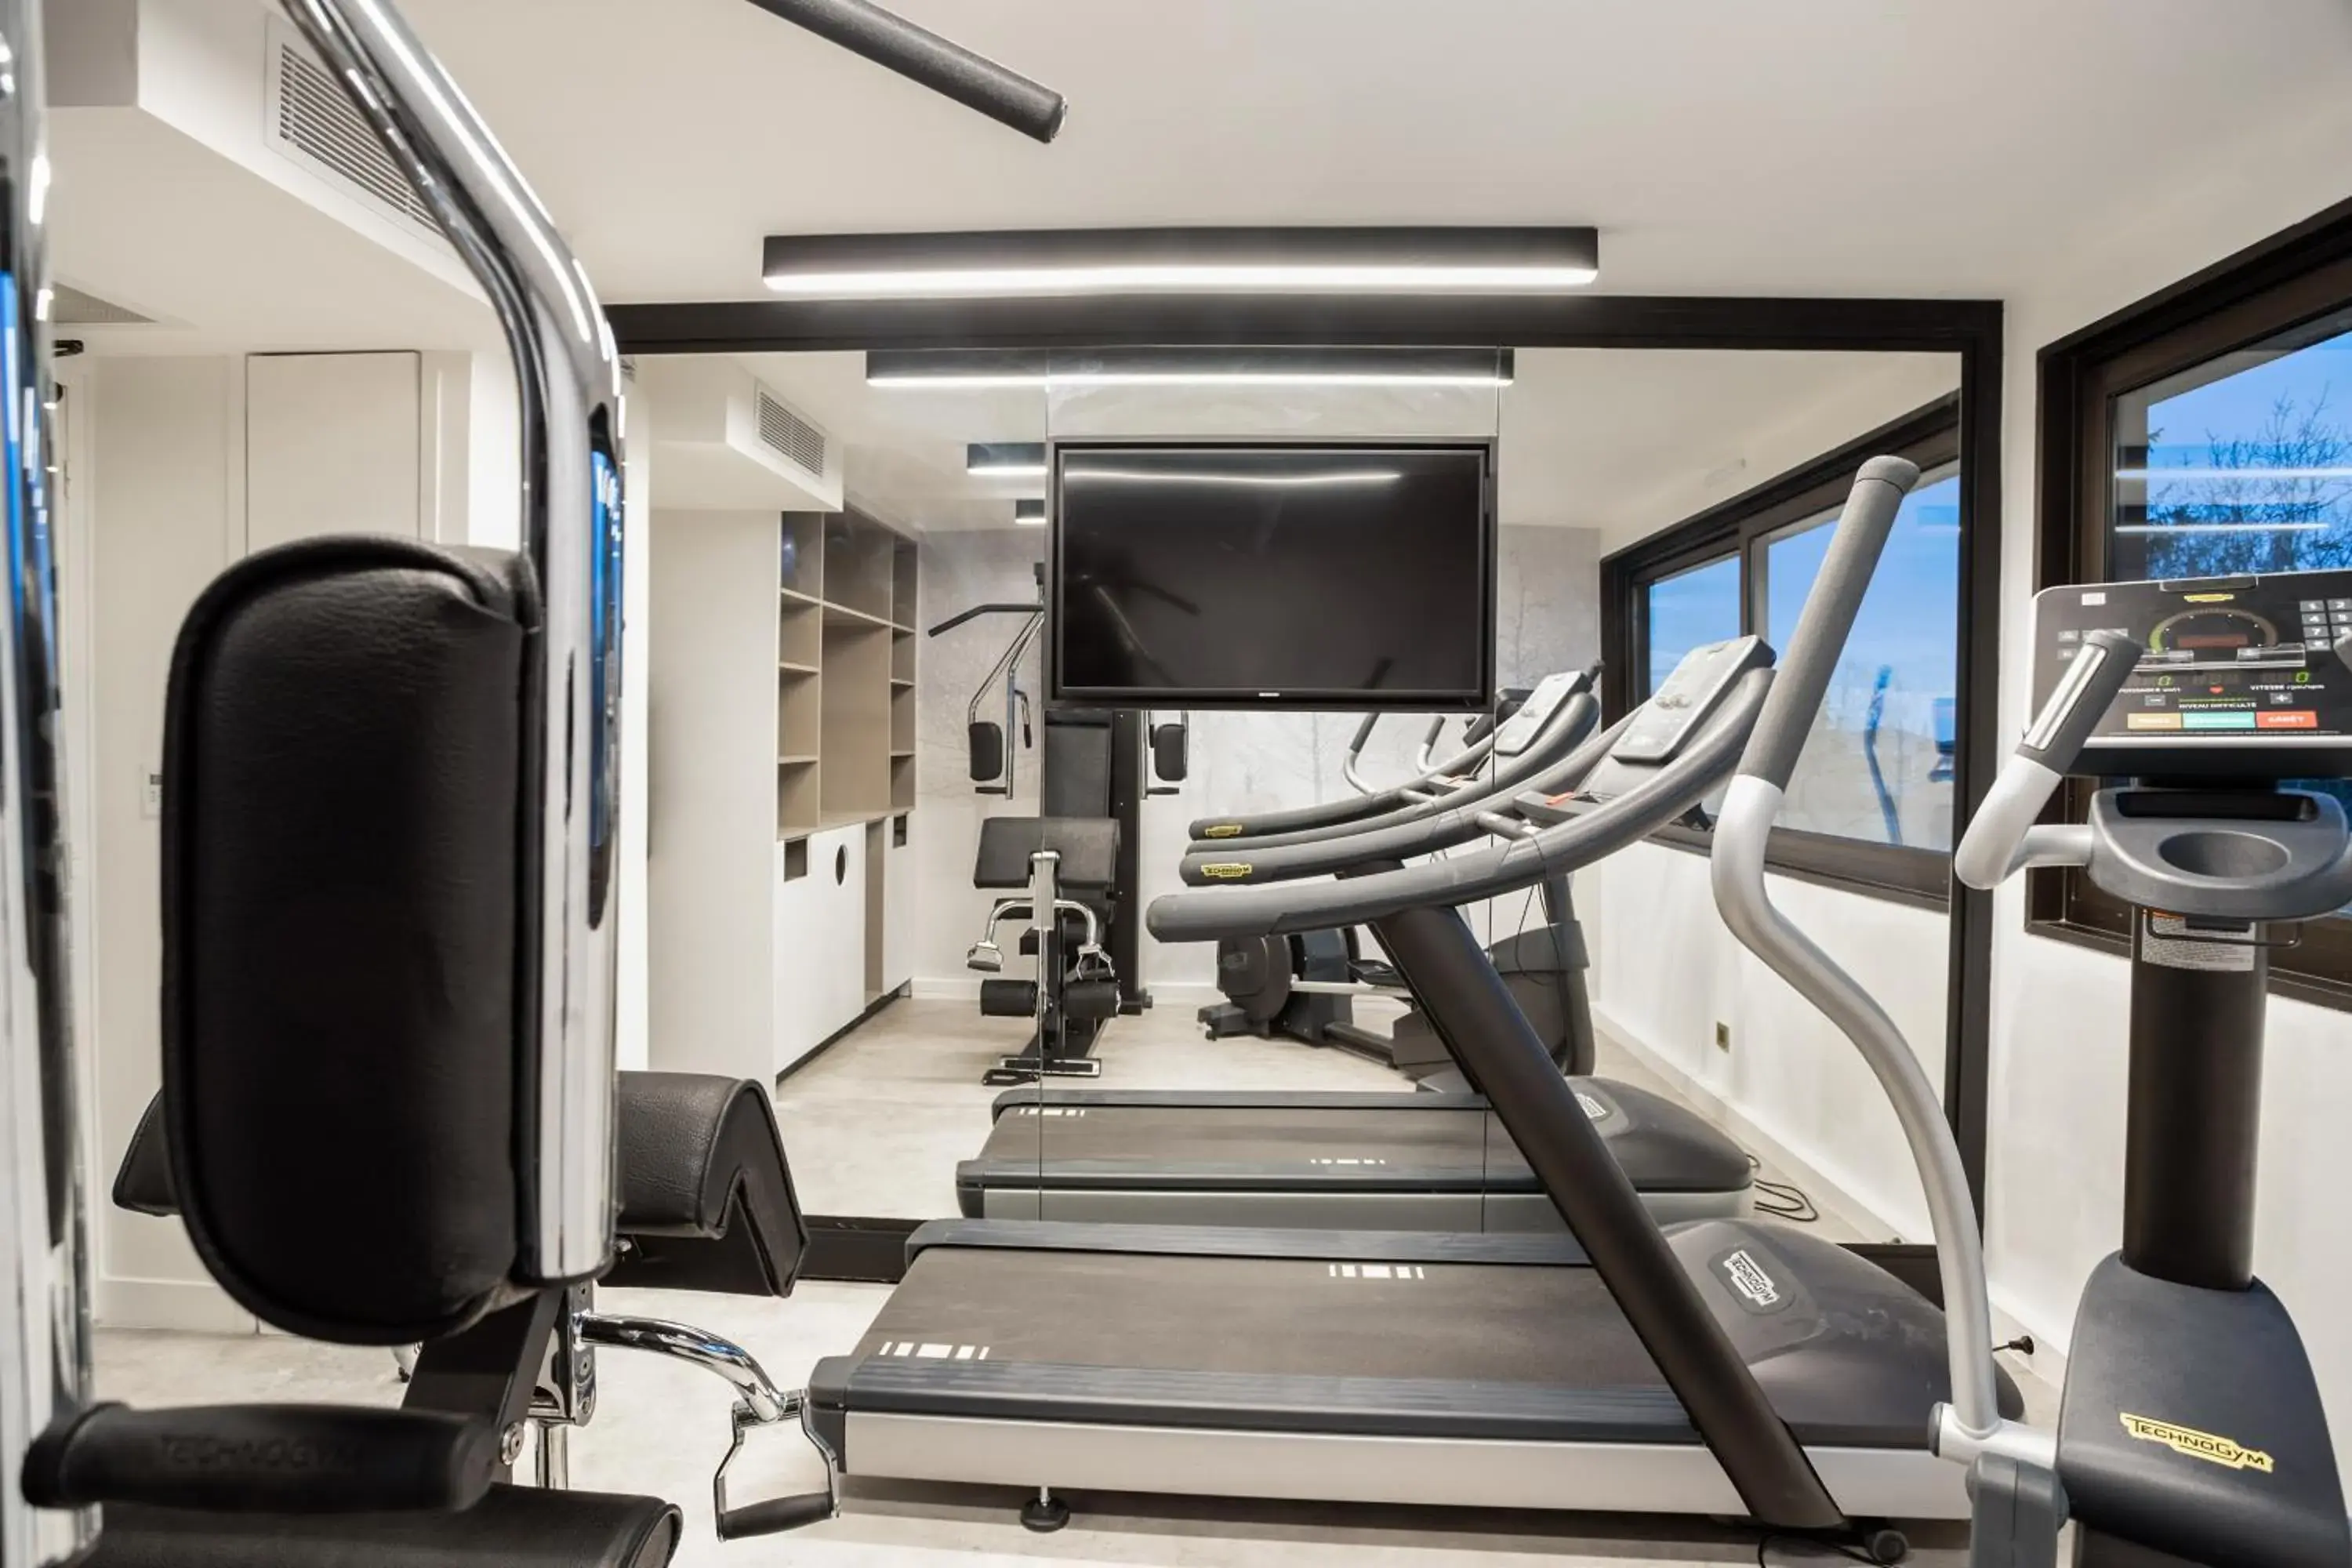 Fitness centre/facilities, Fitness Center/Facilities in Park & Suites Elégance Genève-Ferney Voltaire